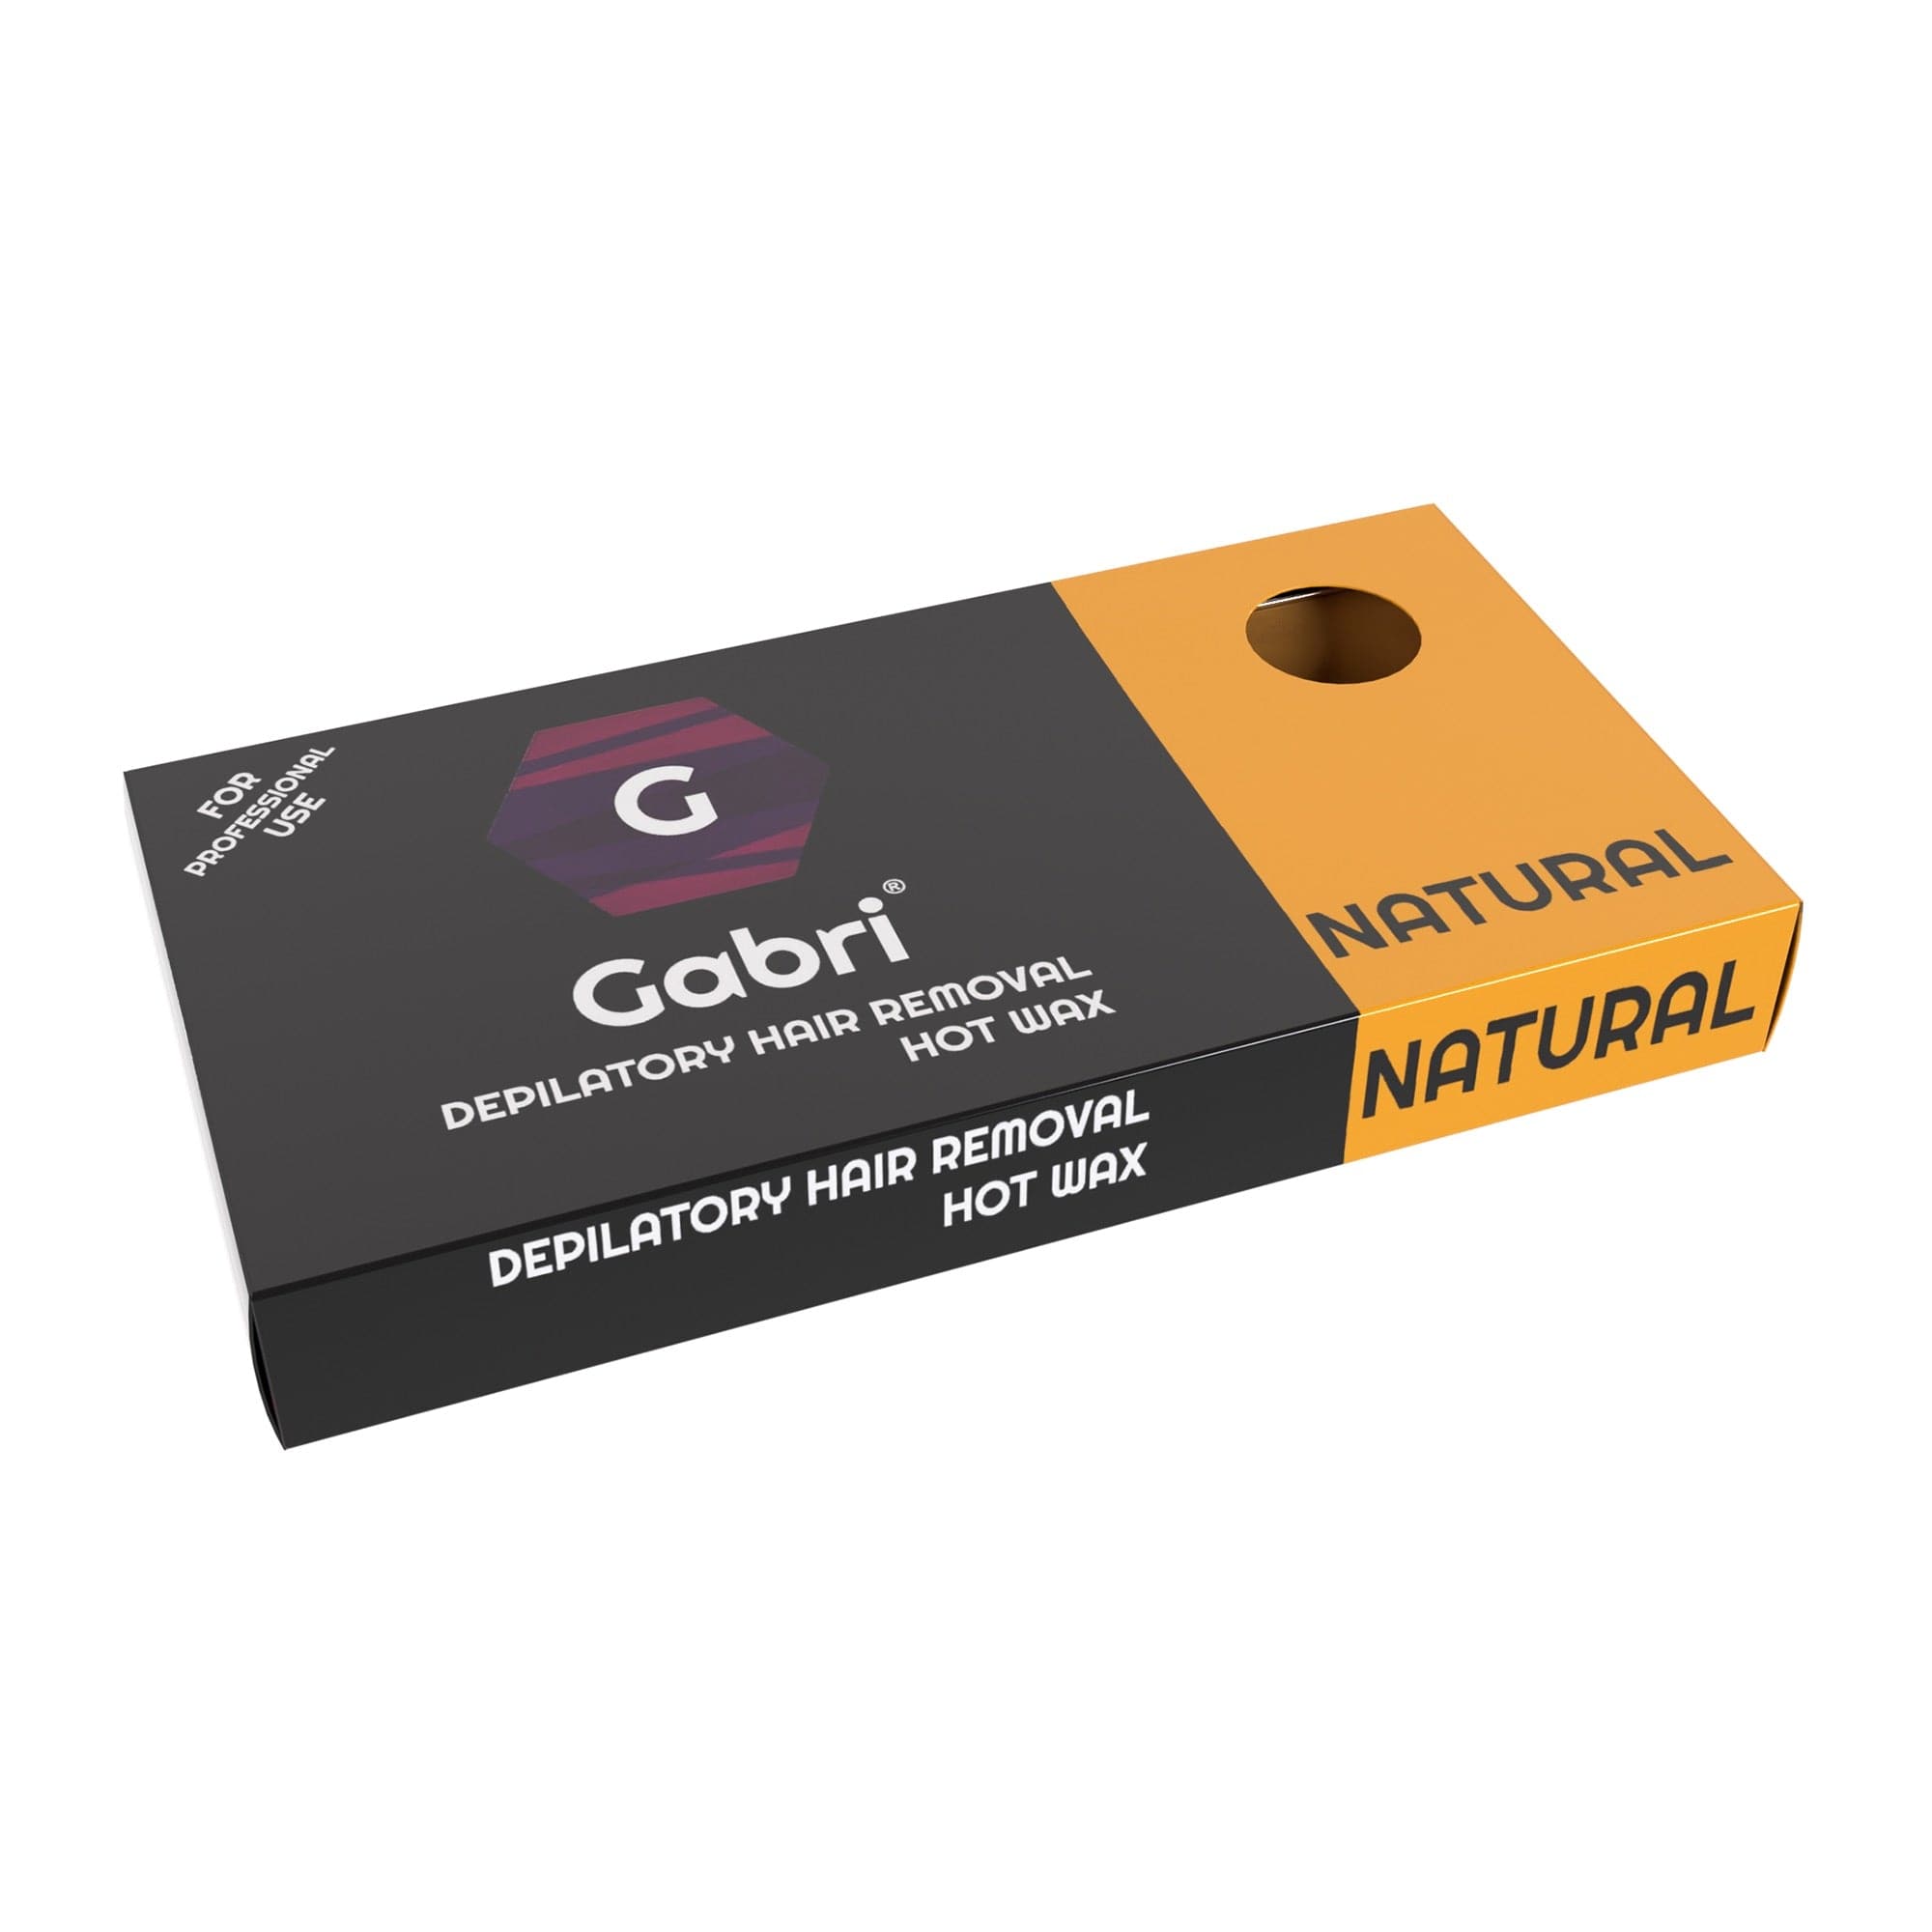 Gabri Professional - Hair Removal Hot Wax Natural 500g